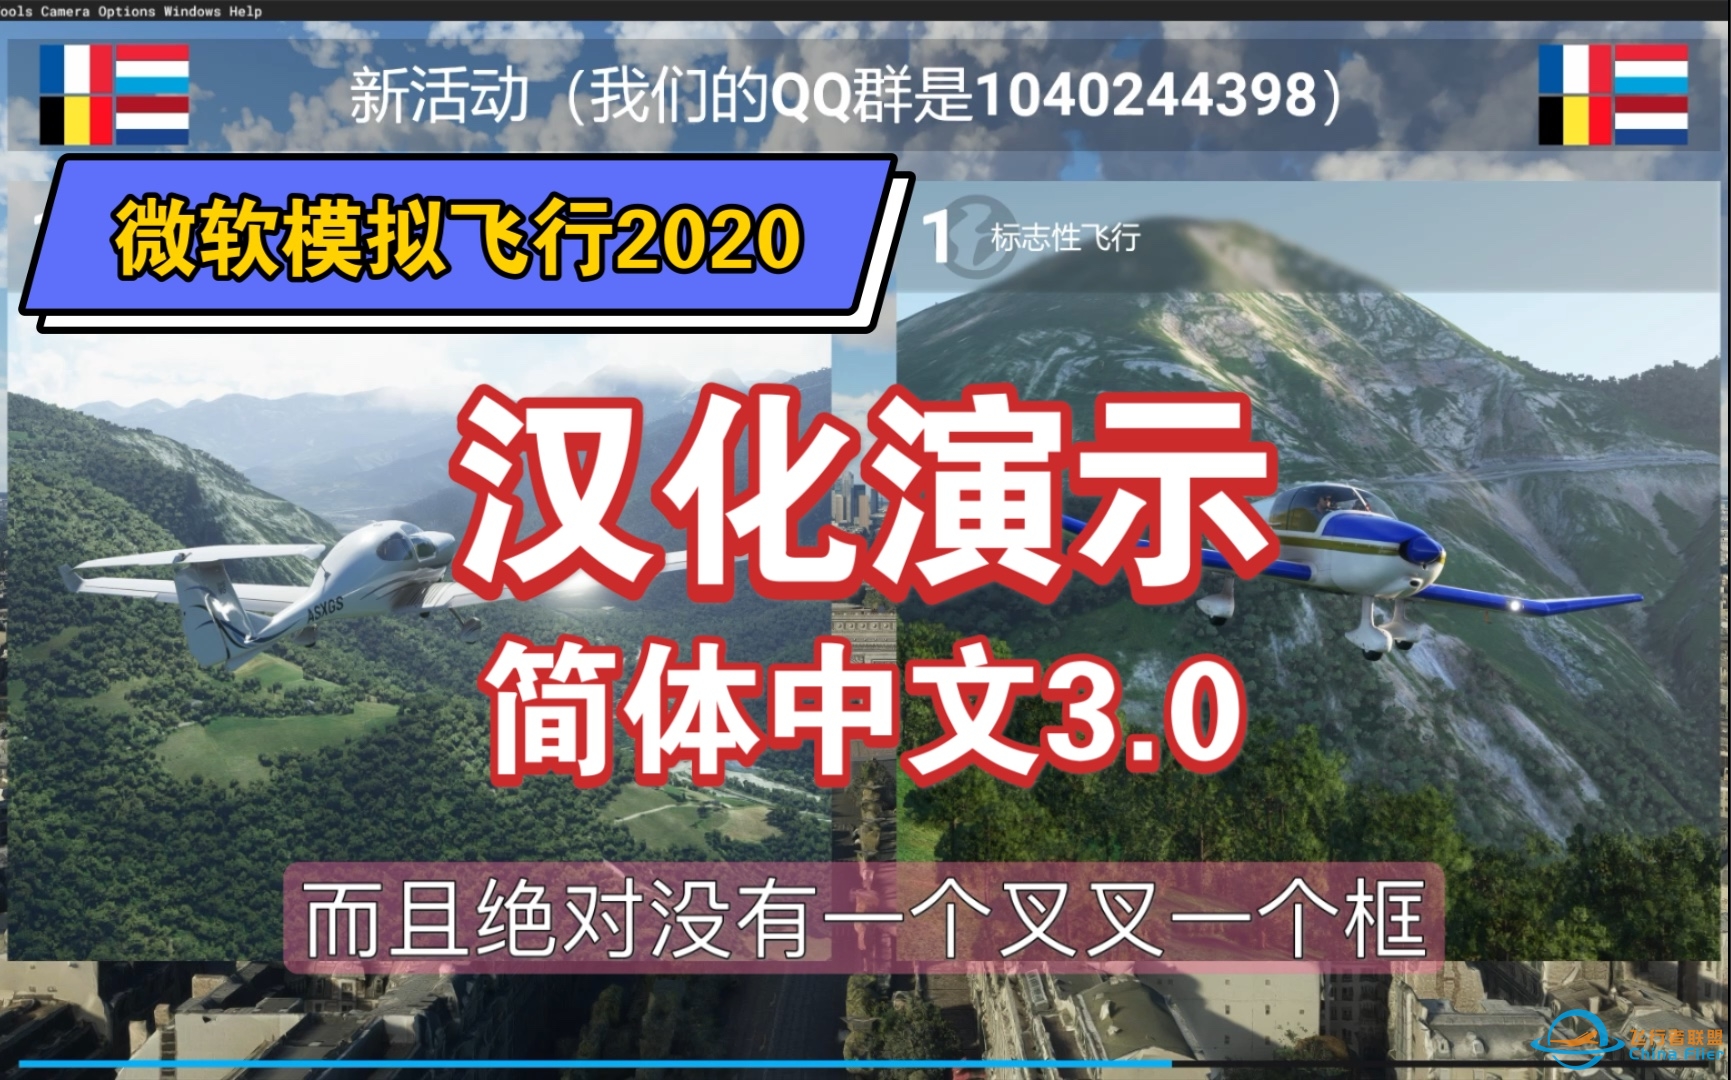 【3.0简体汉化】微软飞行模拟2020汉化版演示【适用于1.16.2.0】-967 